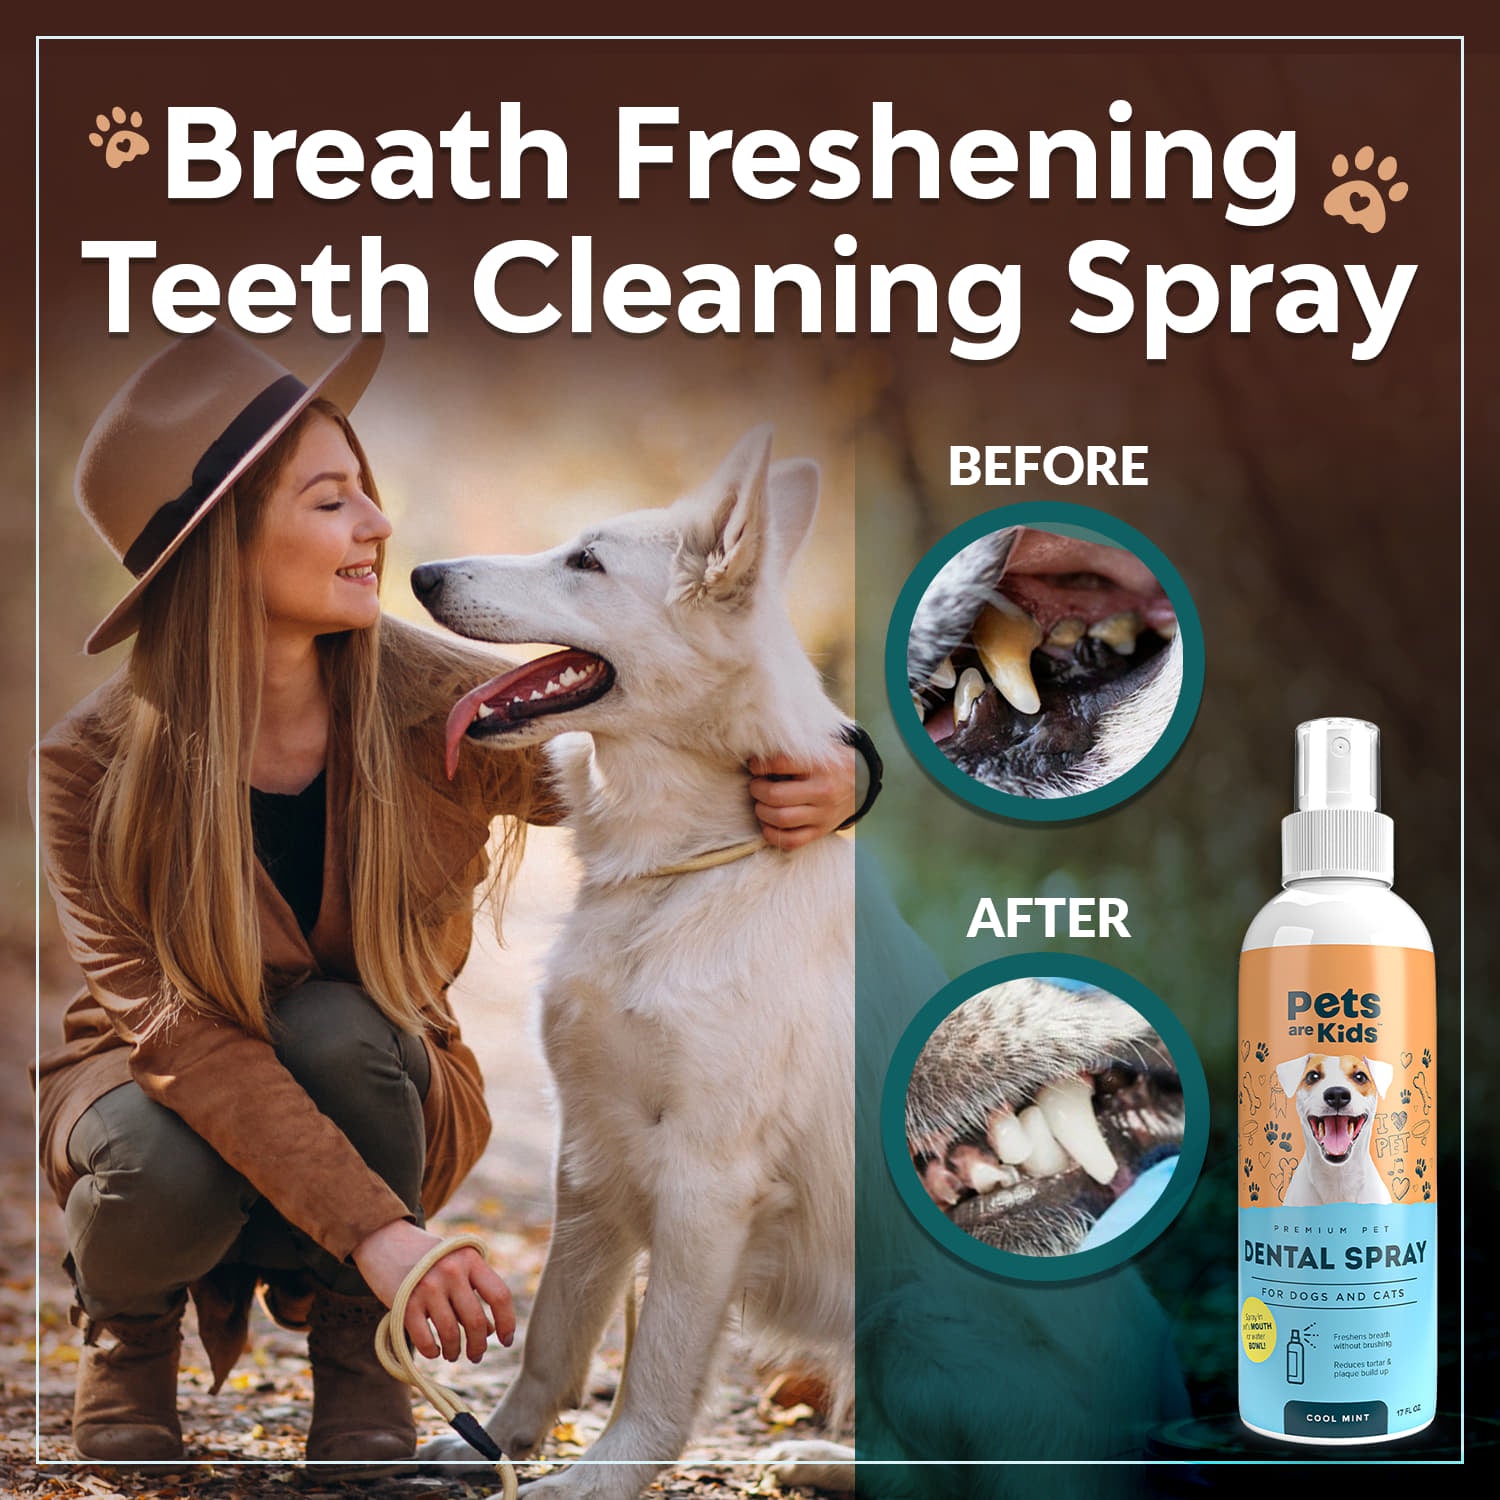 Breath freshening, teeth cleaning spray